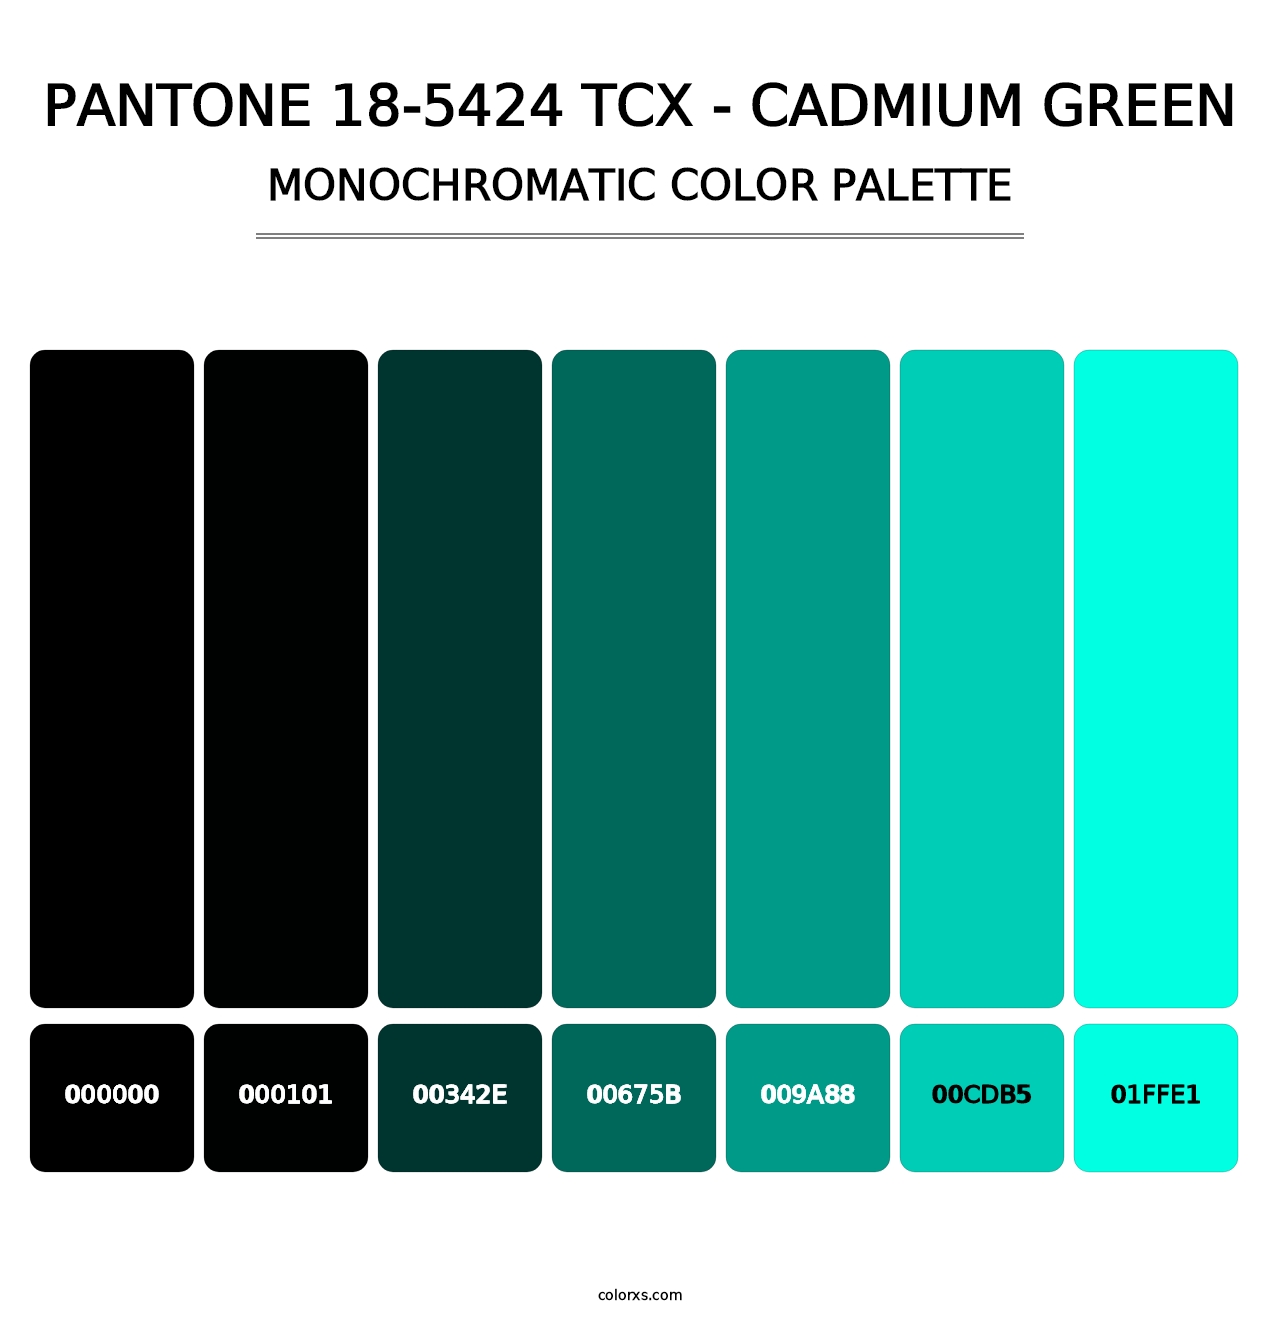 PANTONE 18-5424 TCX - Cadmium Green - Monochromatic Color Palette